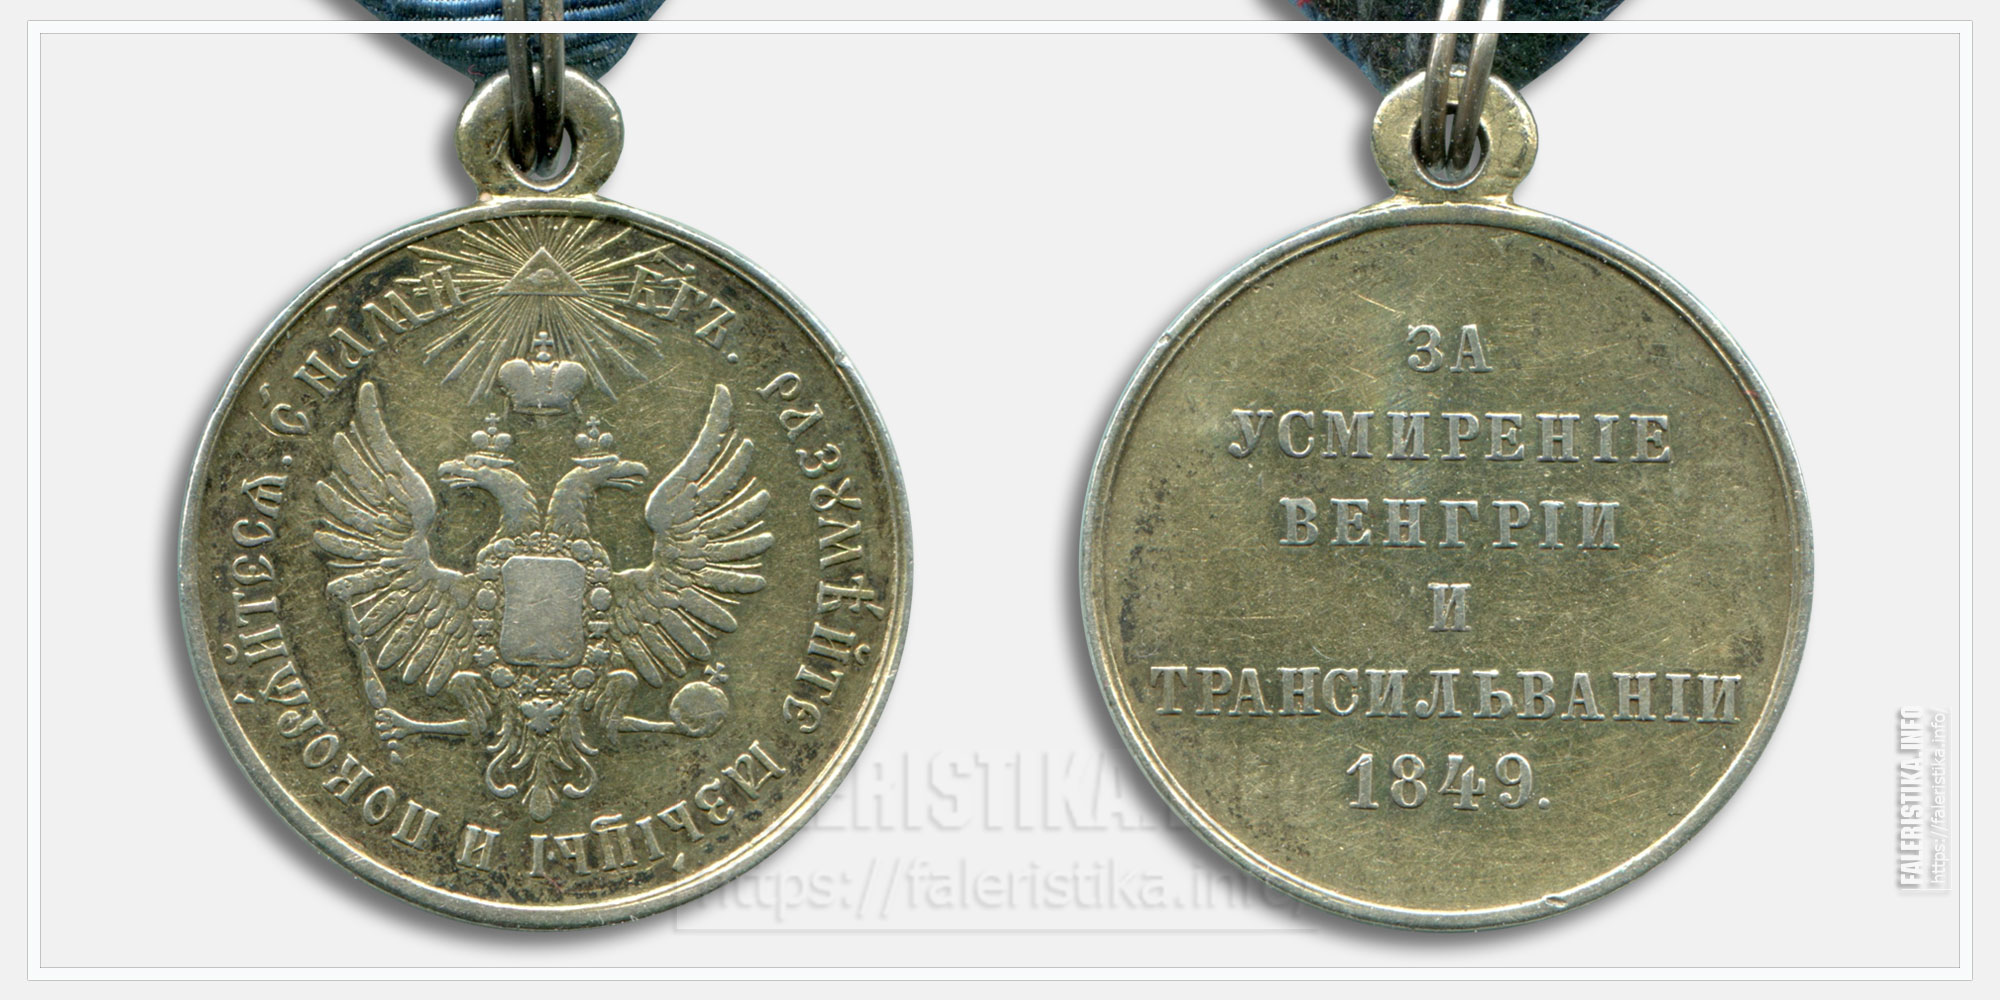 Медаль "За усмирении Венгрии и Трансильвании 1849"